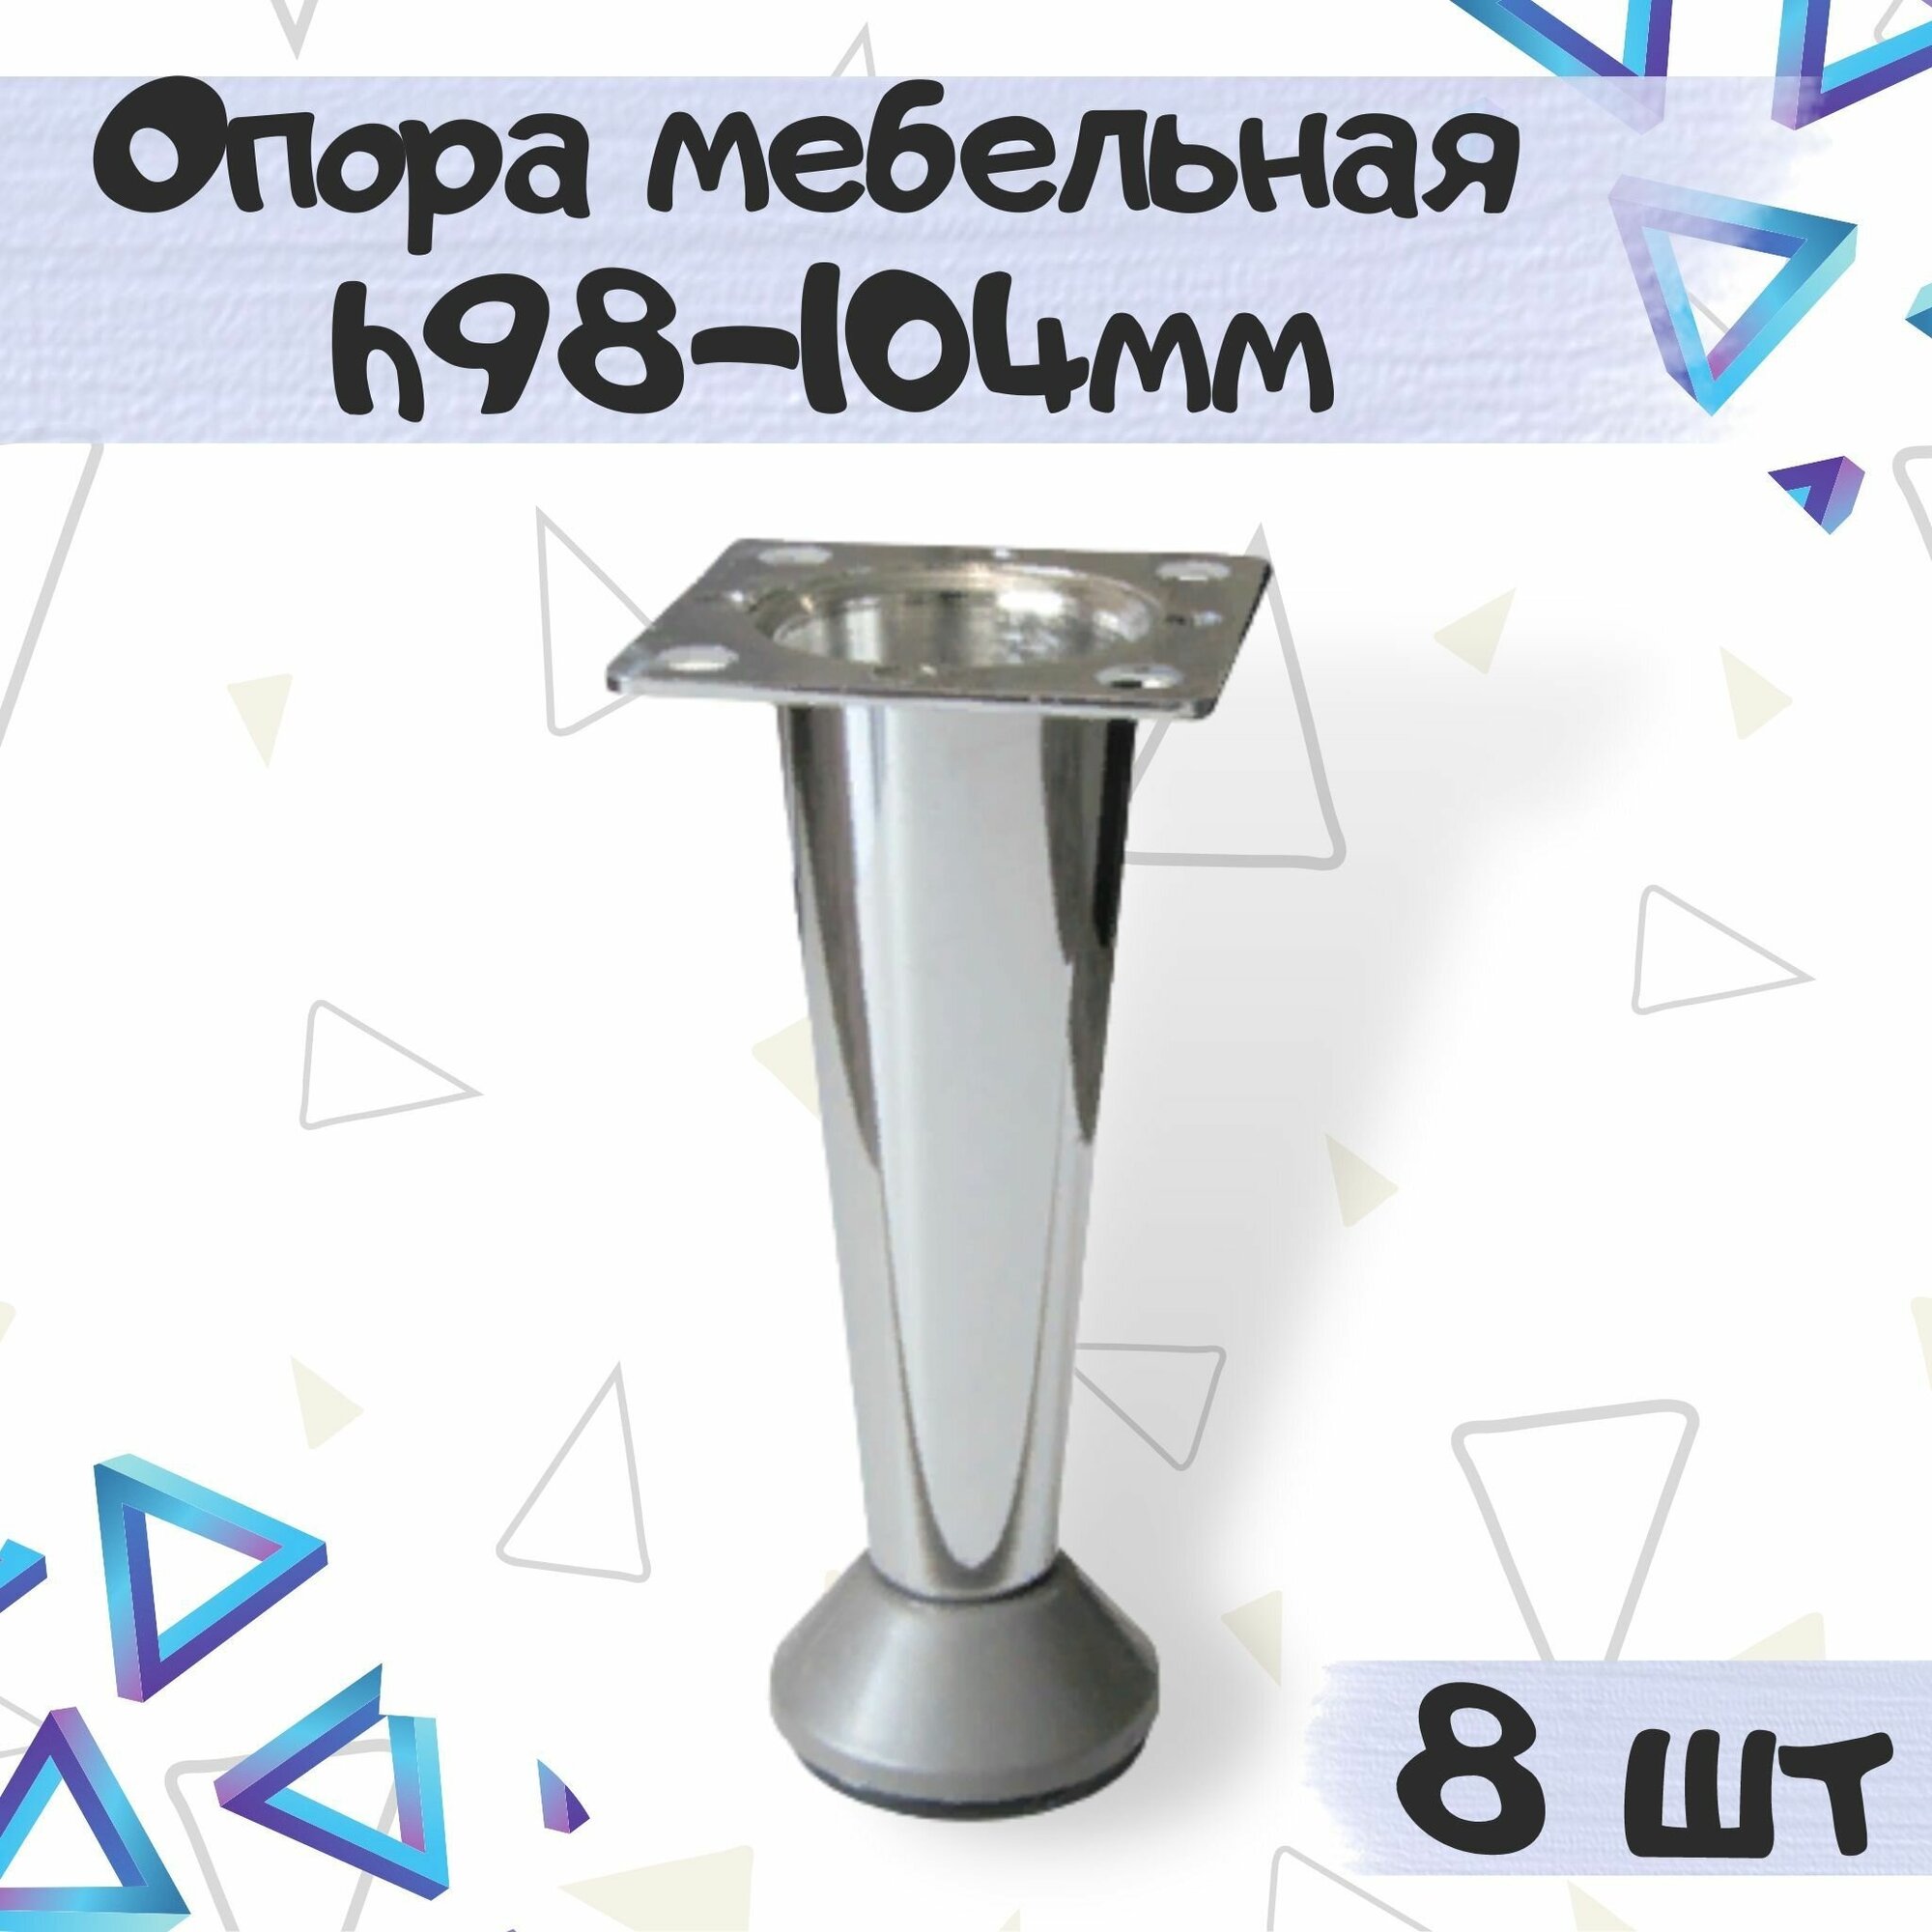 Опора-ножка декоративная мебельная в форме конуса, h-98-104 мм, цвет - под нержавеющую сталь, 8 шт.